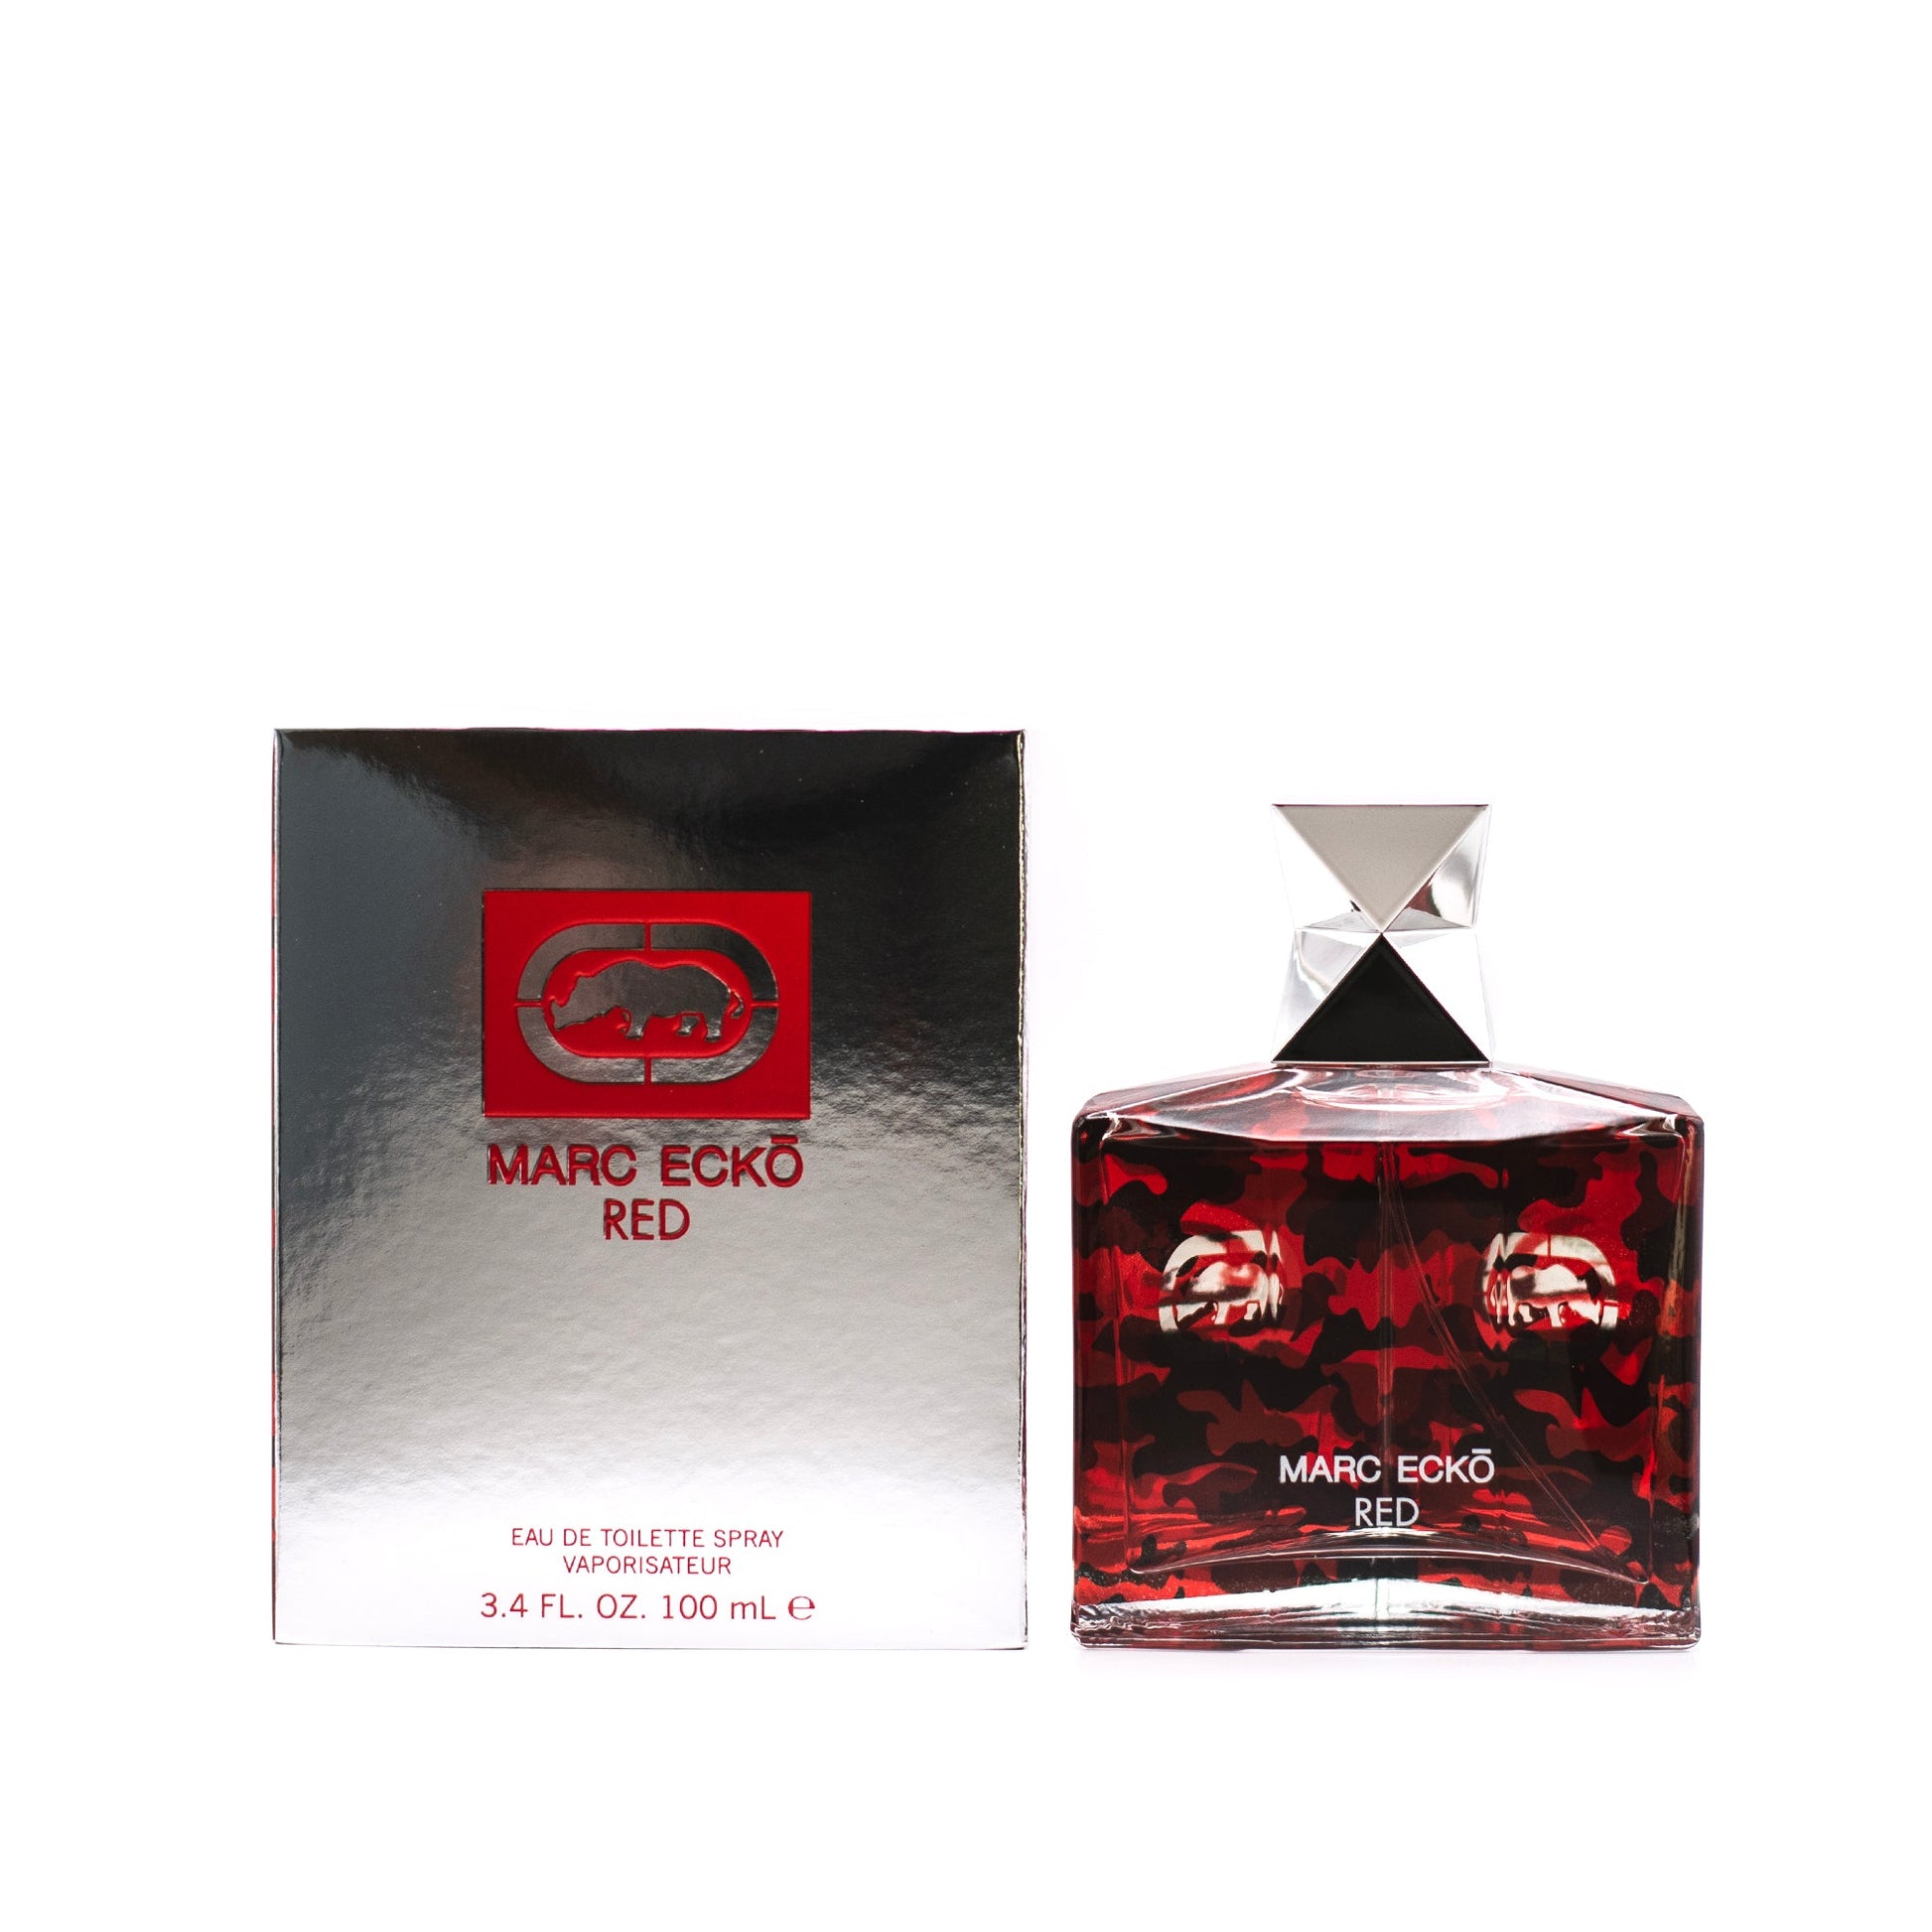 Ecko Red Eau De Toilette Spray for Men by Marc Ecko, Product image 1